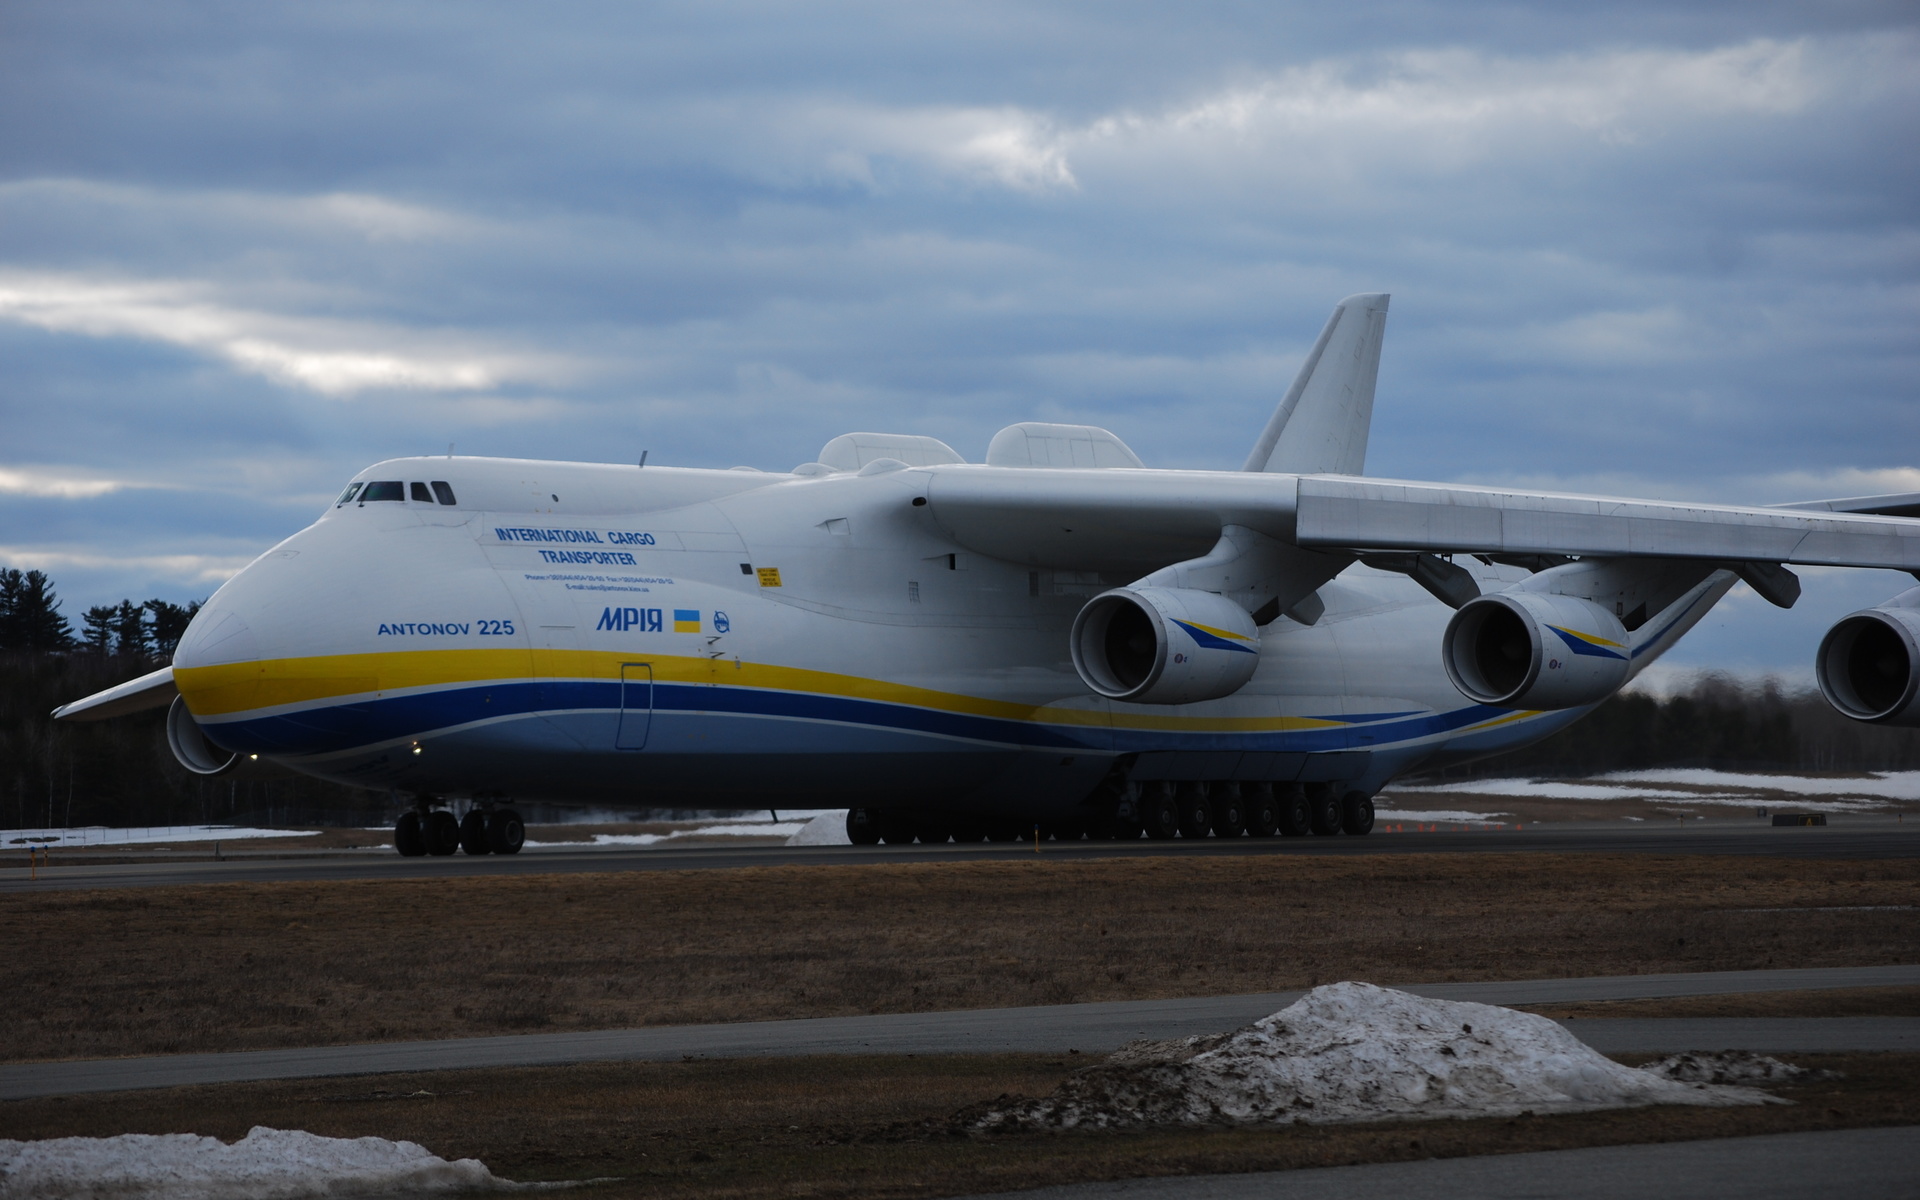 an 225, ан-225, mriya, dream, мрия, самолёт, большой, грузовой, украина (252), вес 590 тонн, грузоподъемность 254 тонны, скорость 762 км, синий, желтый, антонов, antonov, bangor